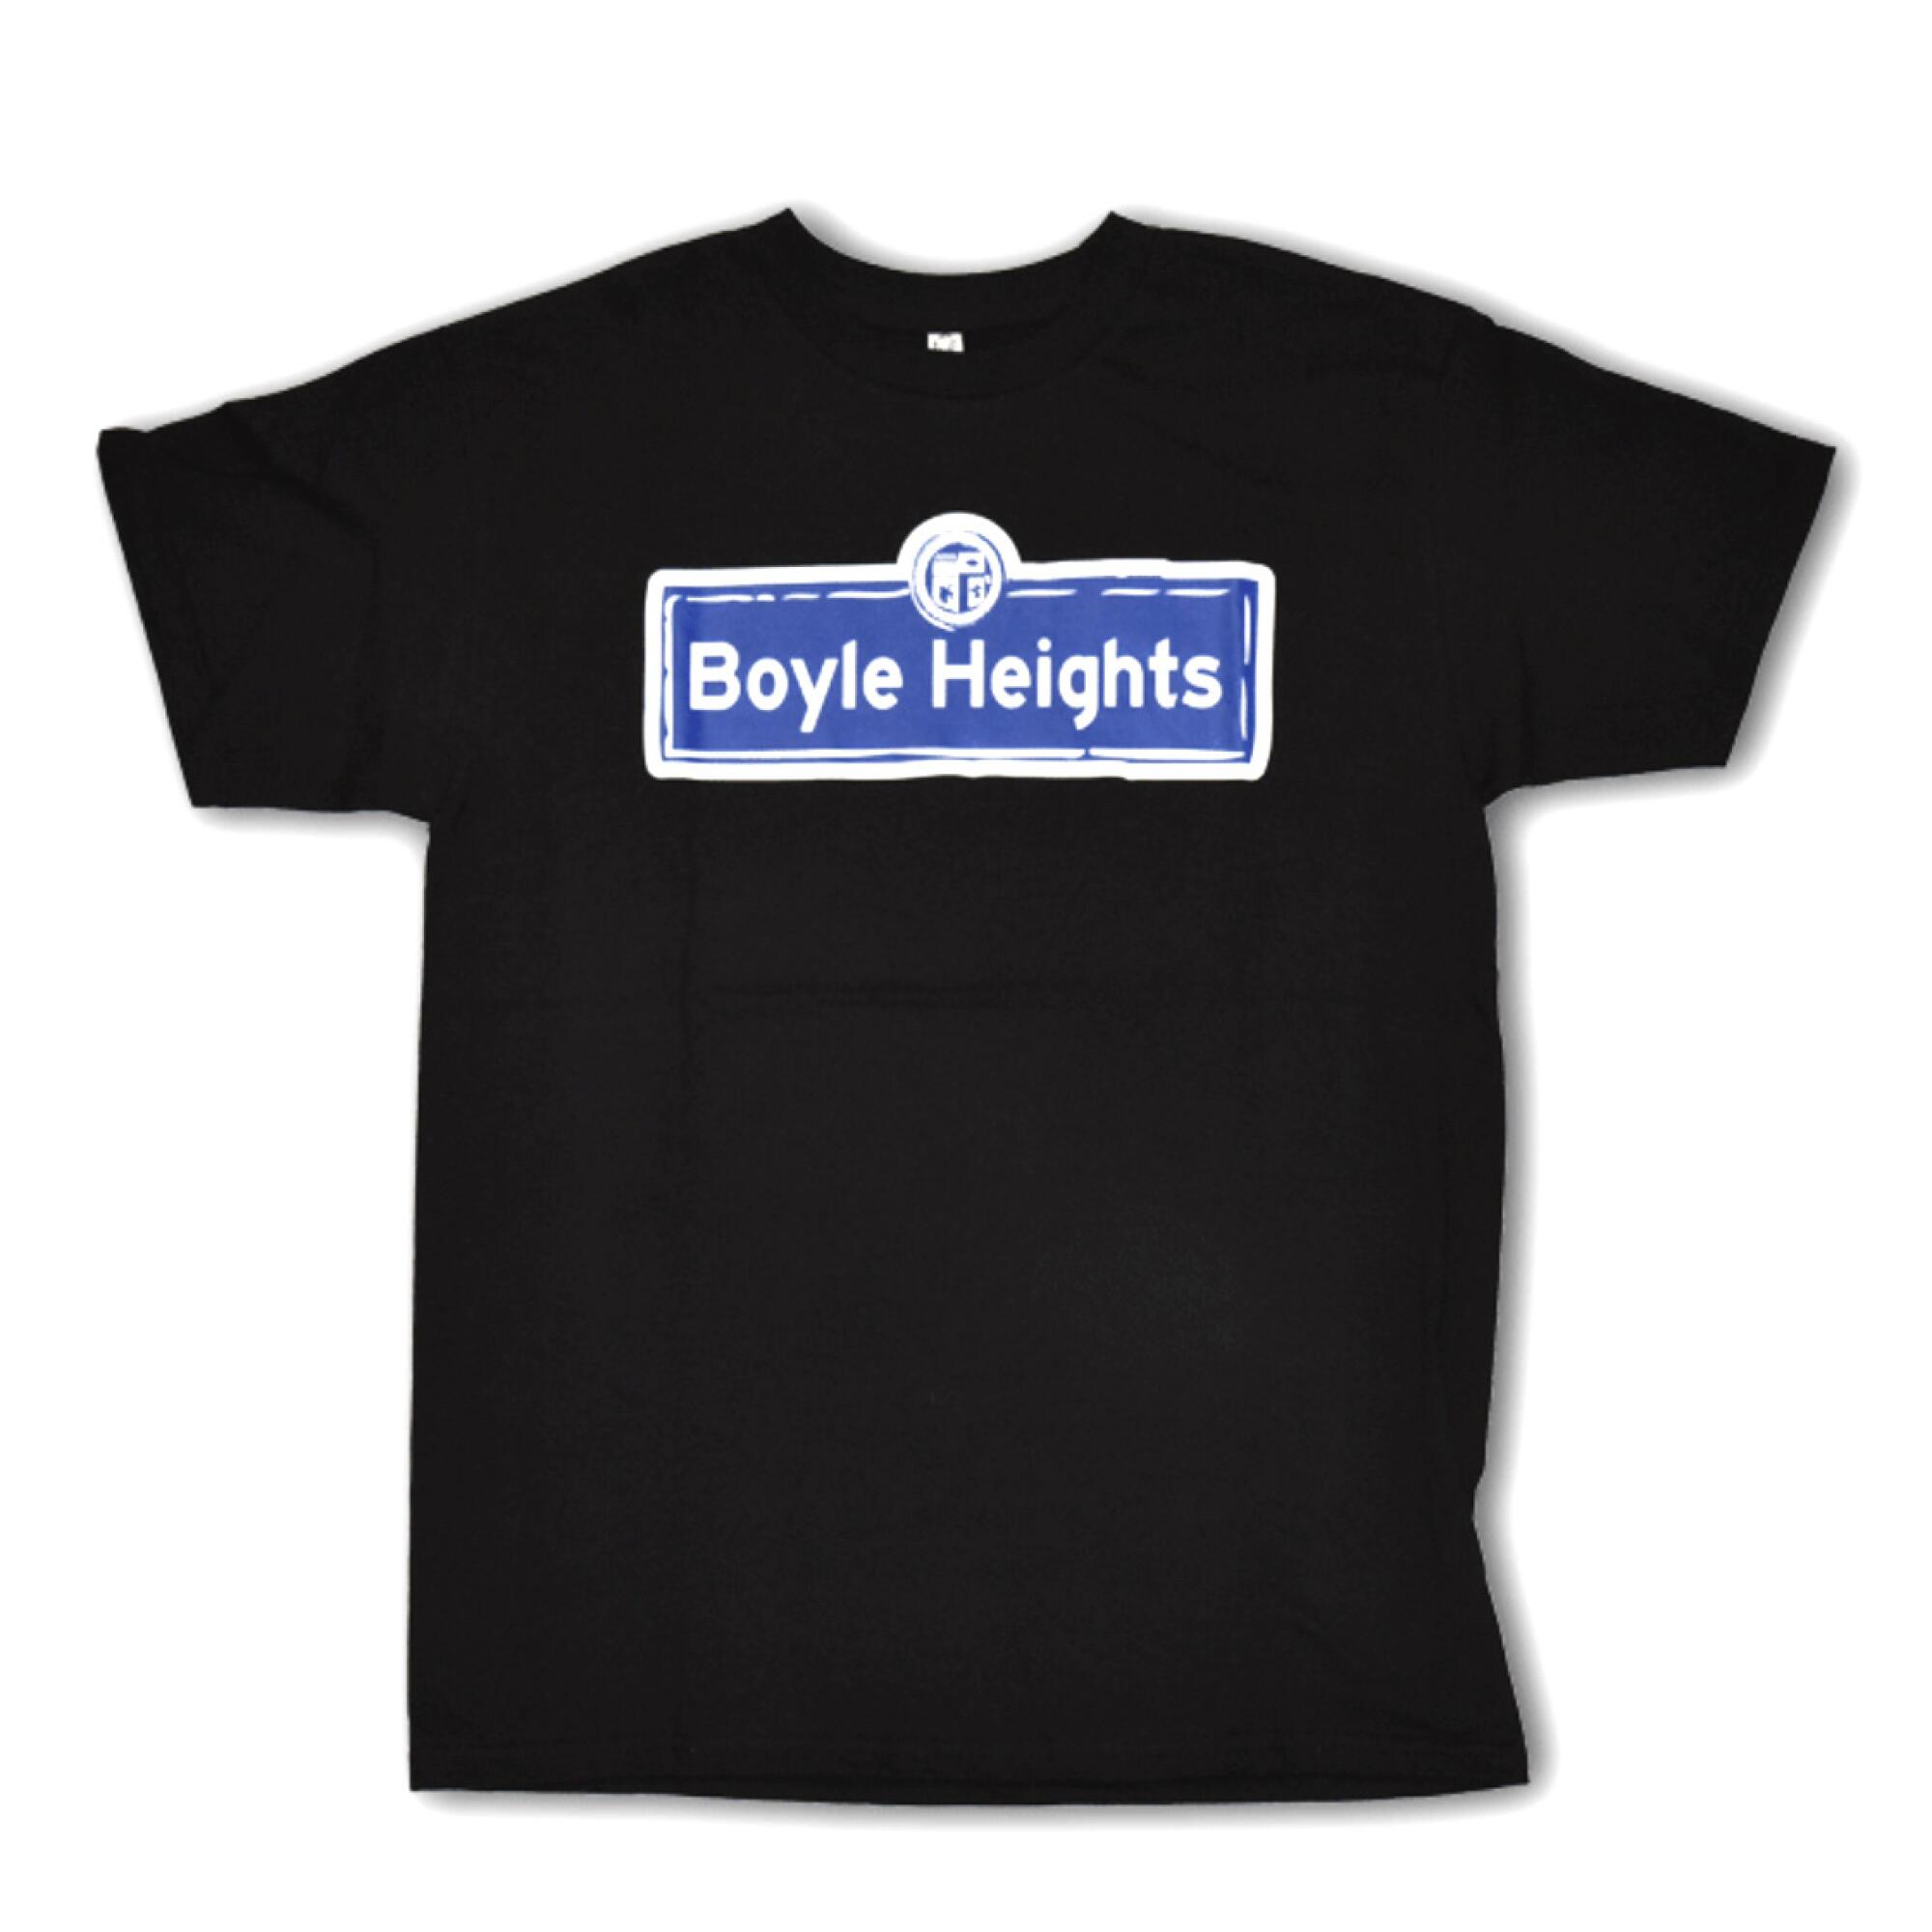 Camiseta Boyle Heights de Espacio 1839 .